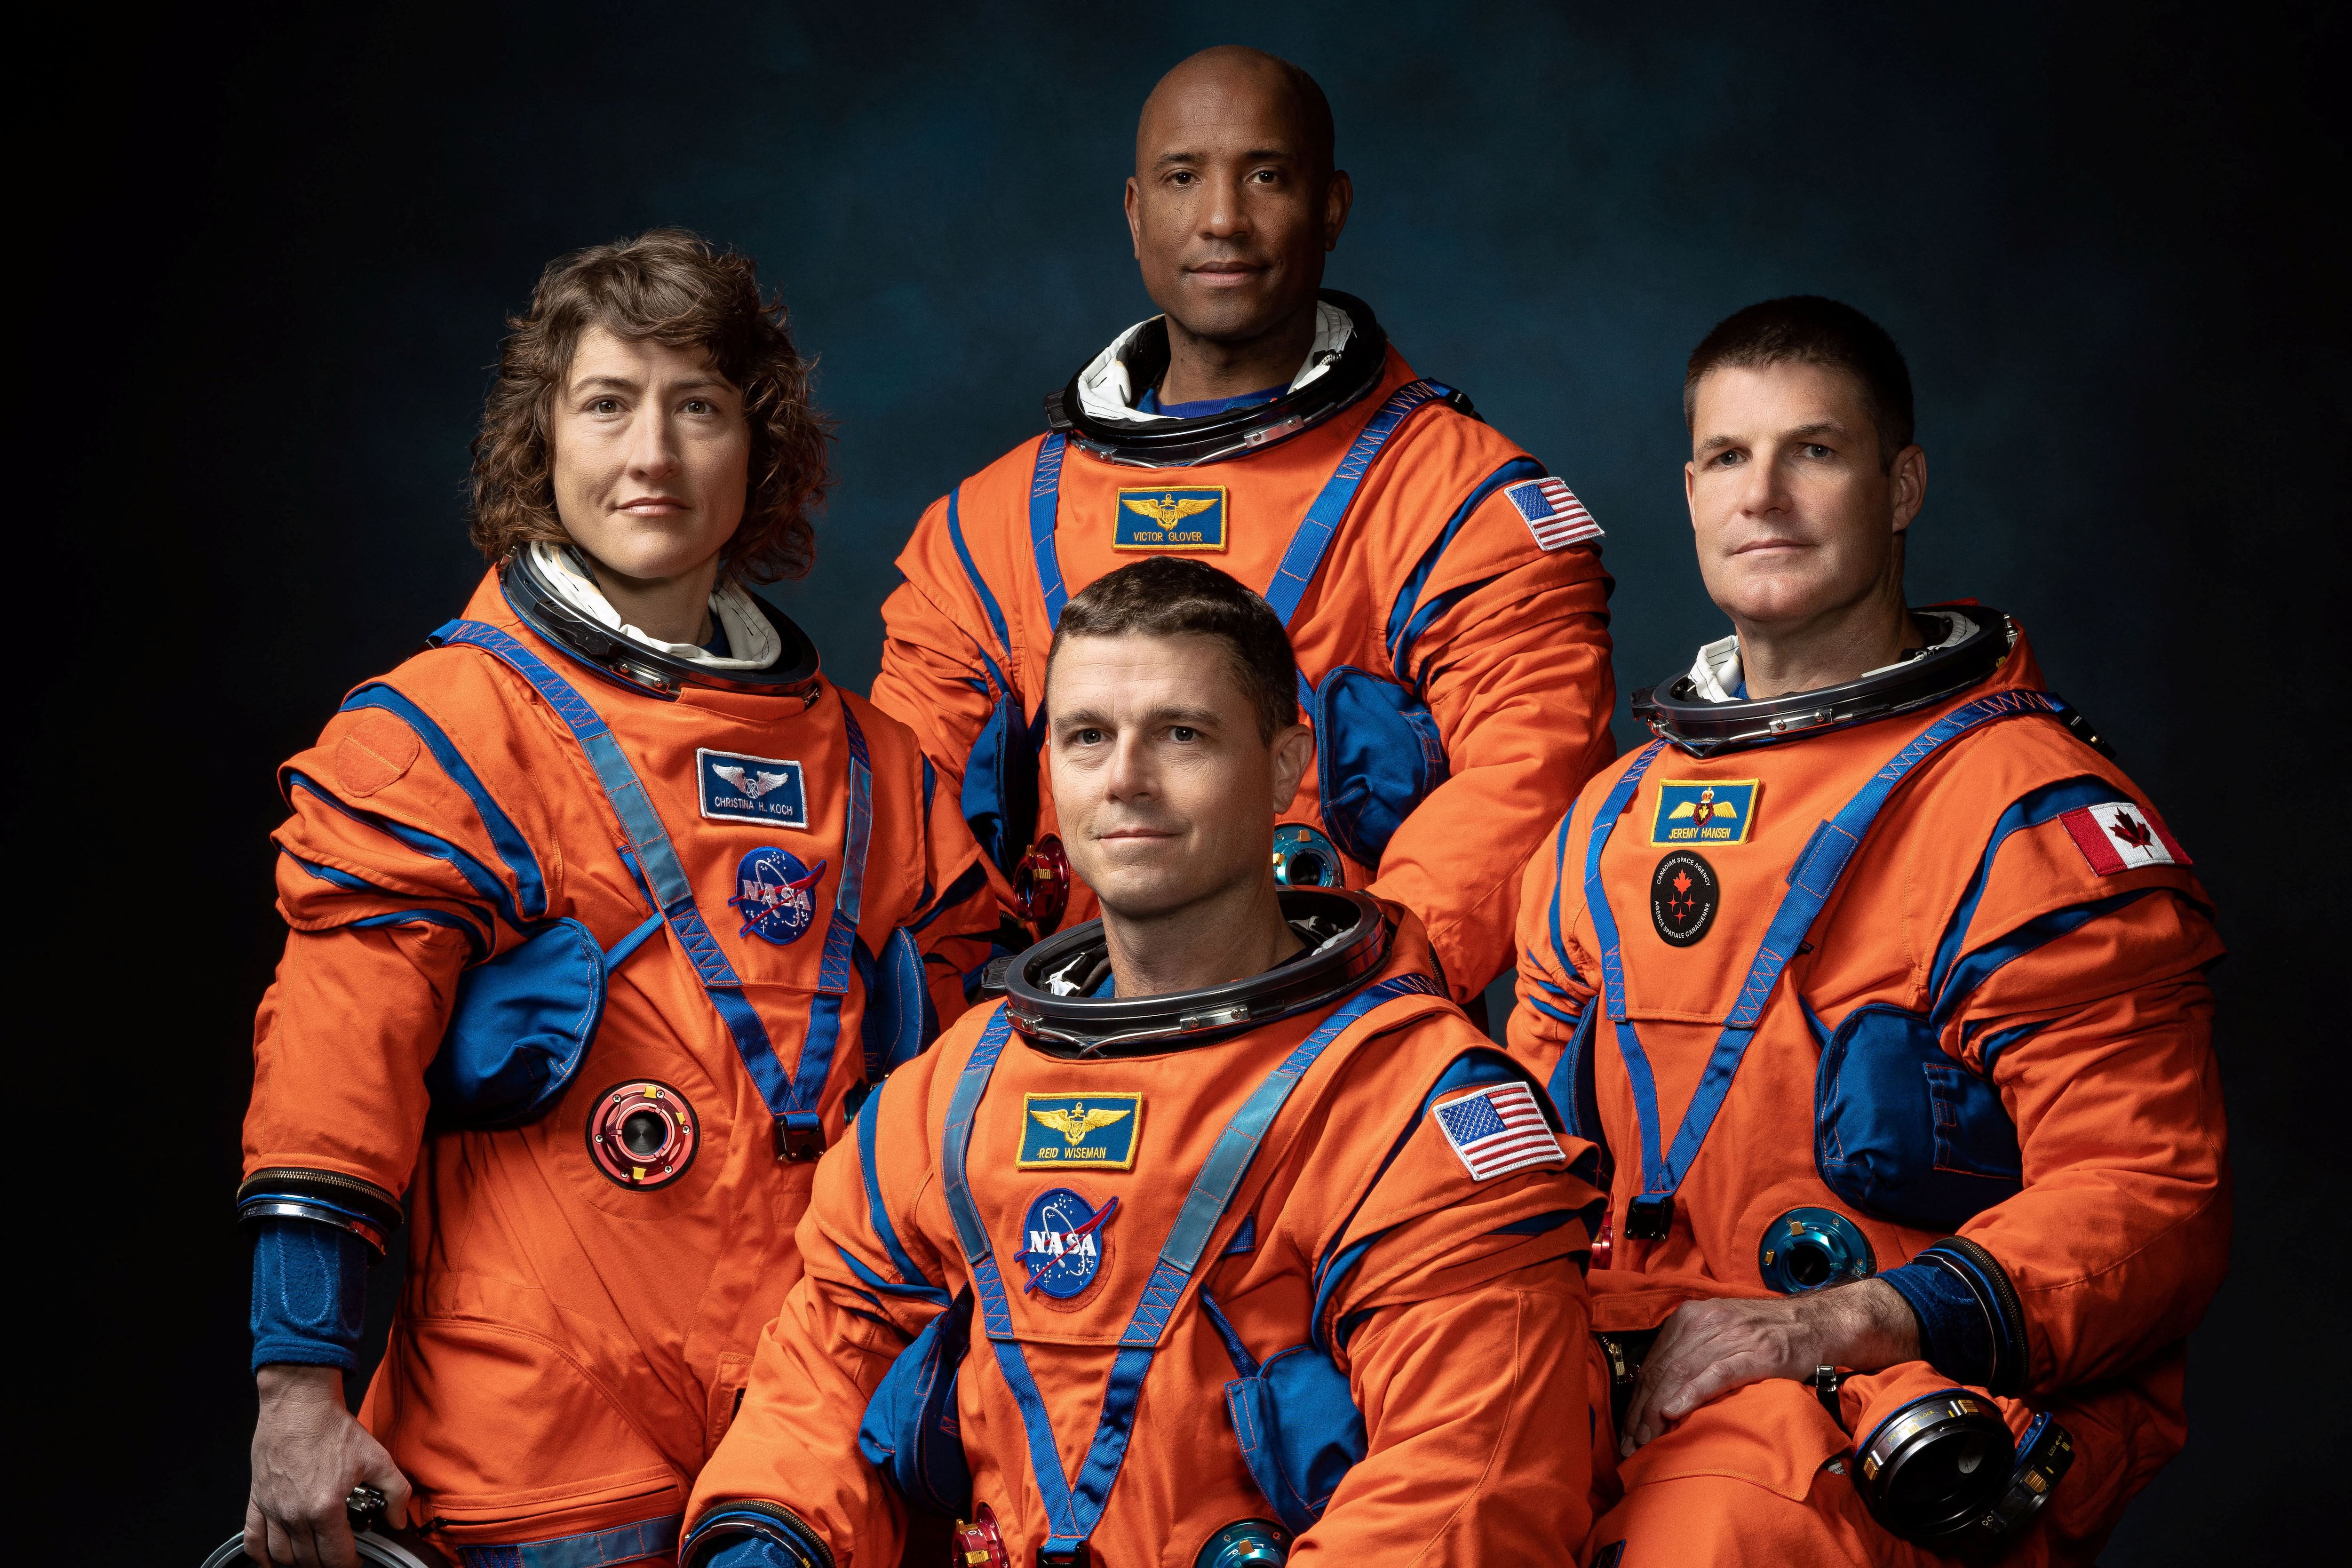 Christina Koch, Victor Glover, Reid Wiseman y Jeremy Hansen fueron los cuatro astronautas designados por la NASA y la CSA para tripular Artemis II (NASA)